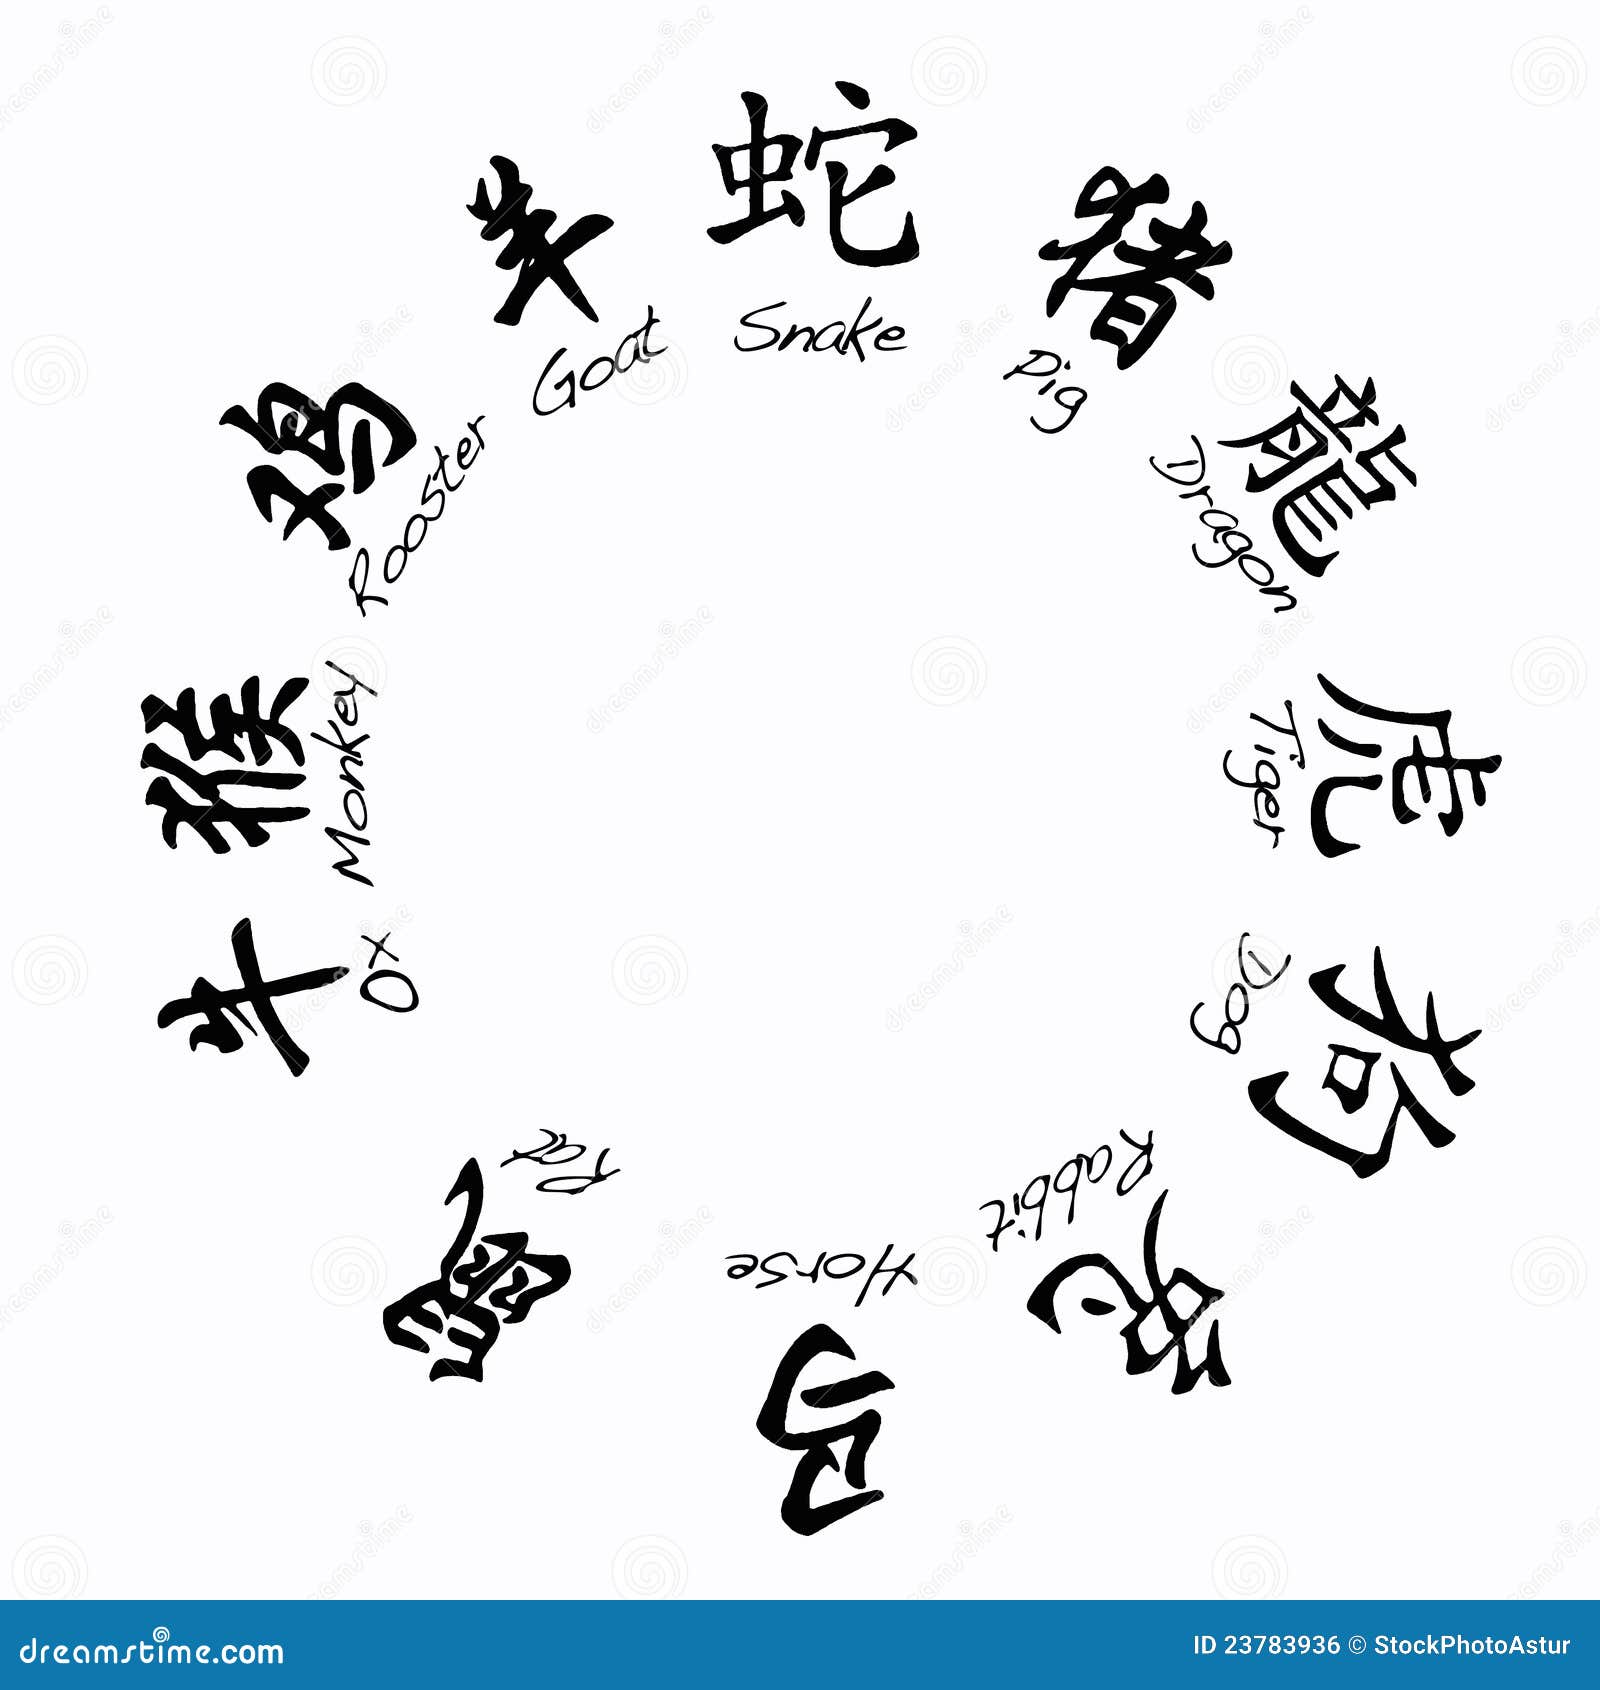 Знаки зодиака на китайском языке. Астрологические знаки в Китае. Стоковые картинки о китайской астрологии. Рамочка для текста с китайскими символами.